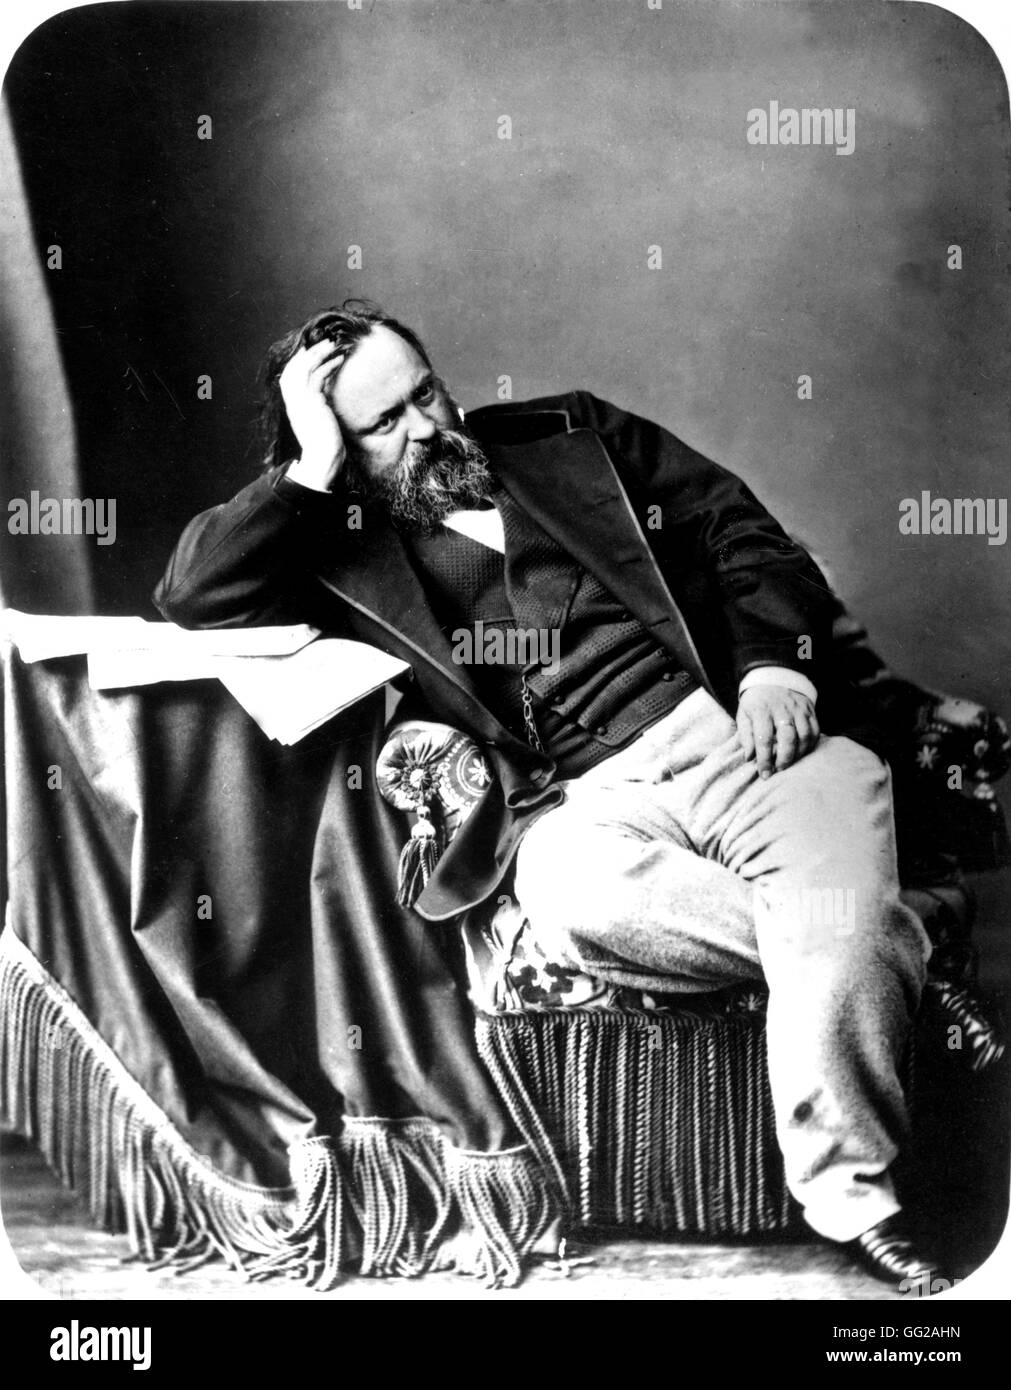 Herzen (1812-1870), filosofo russo e scrittore del XIX secolo la Russia a Parigi. Biblioteca nazionale Foto Stock